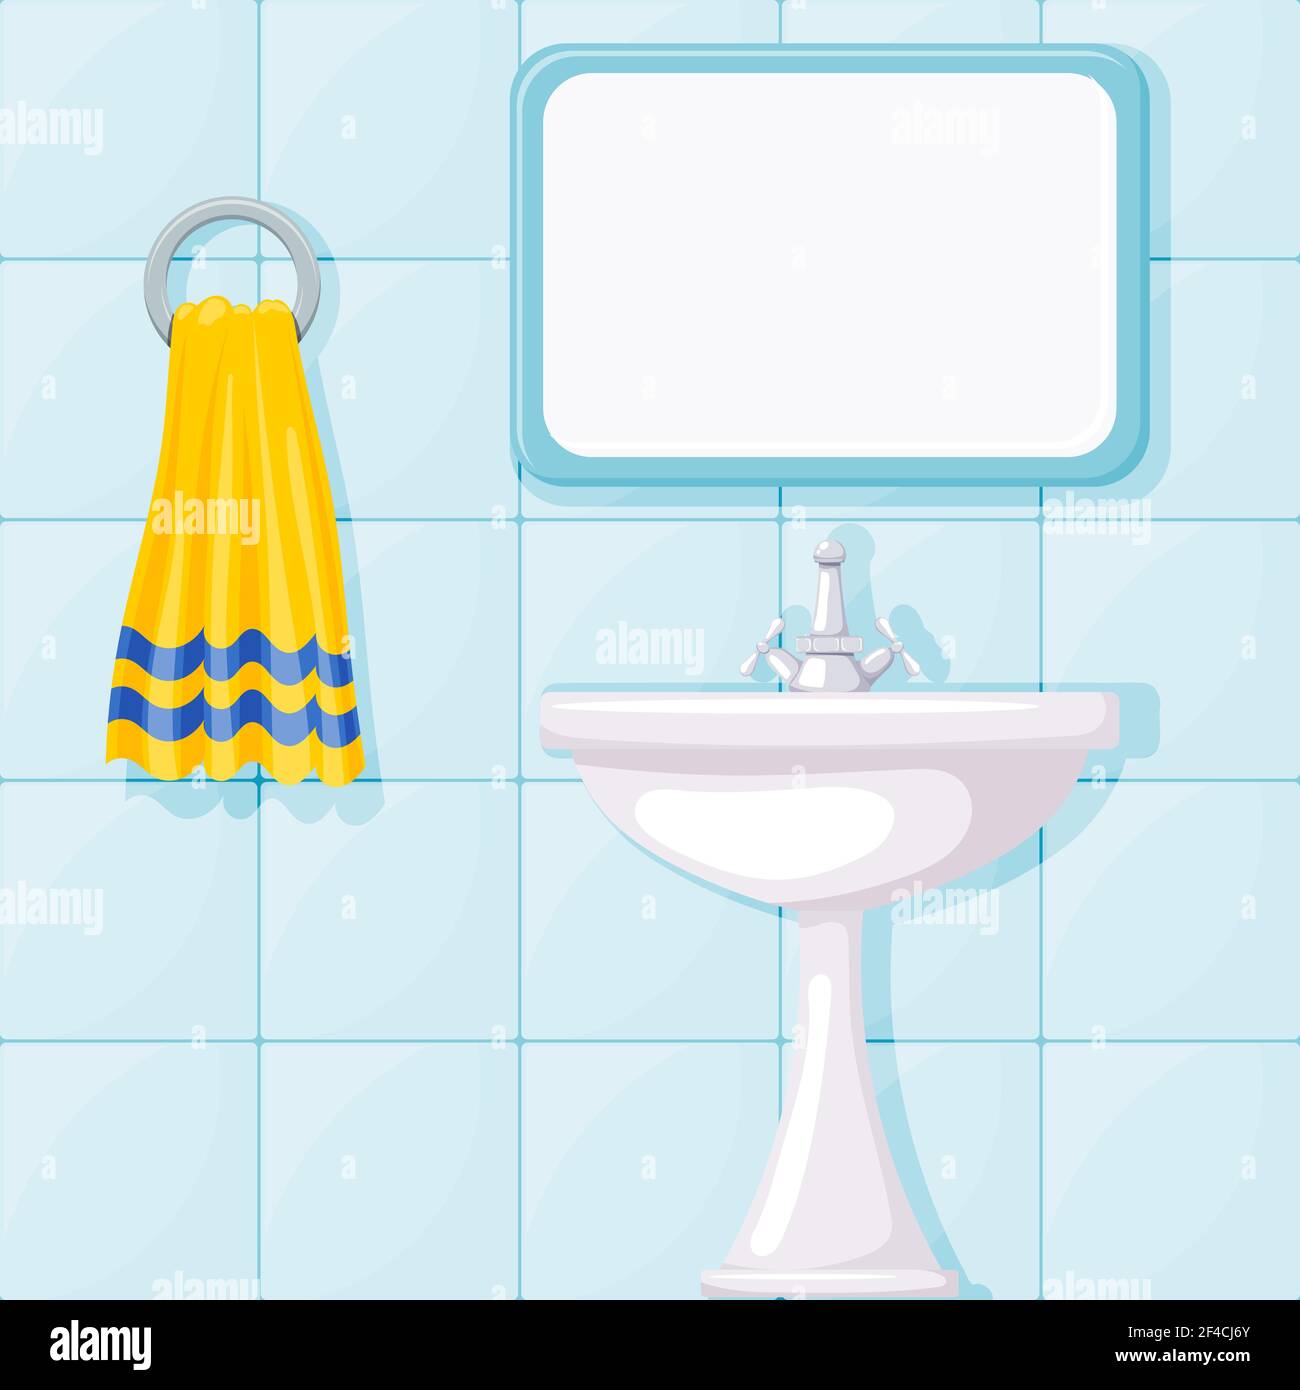 Vector illustration of bathroom ceramic wash basin, tiled walls, mirror and yellow towel. Cartoon style. Furnishings bathroom Stock Vector